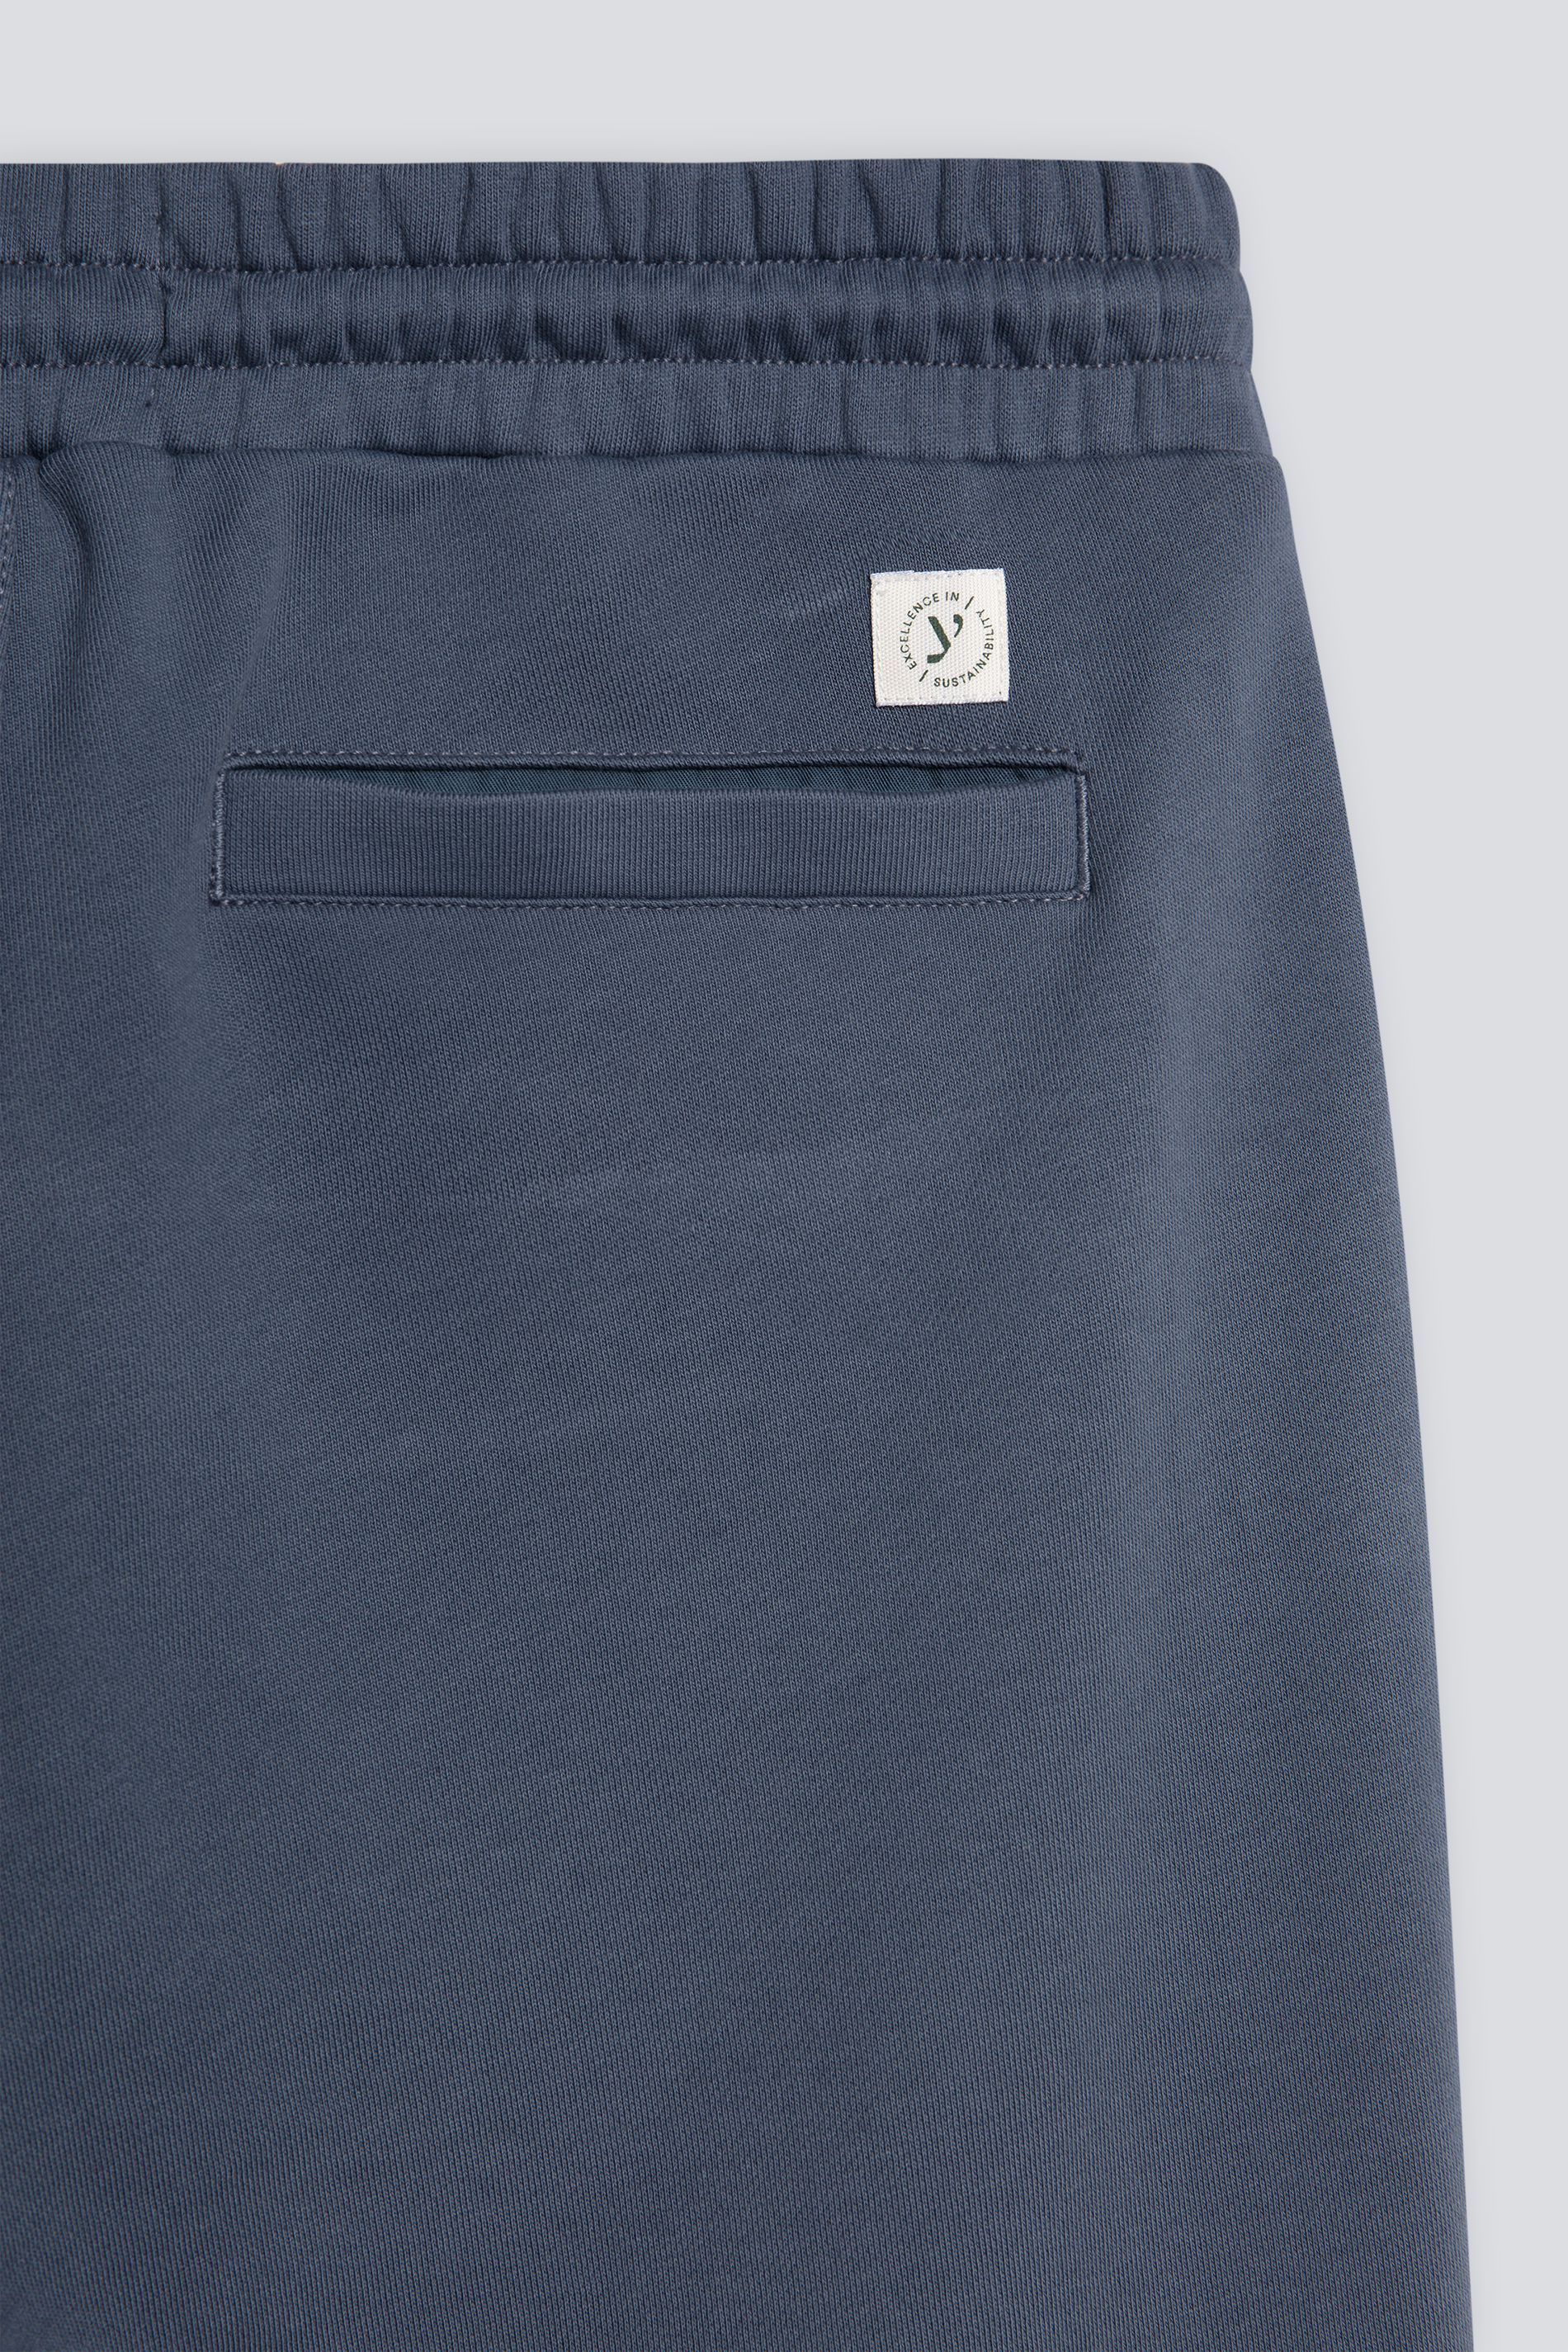 Sweat pants Serie Felpa Cotone Detail View 01 | mey®